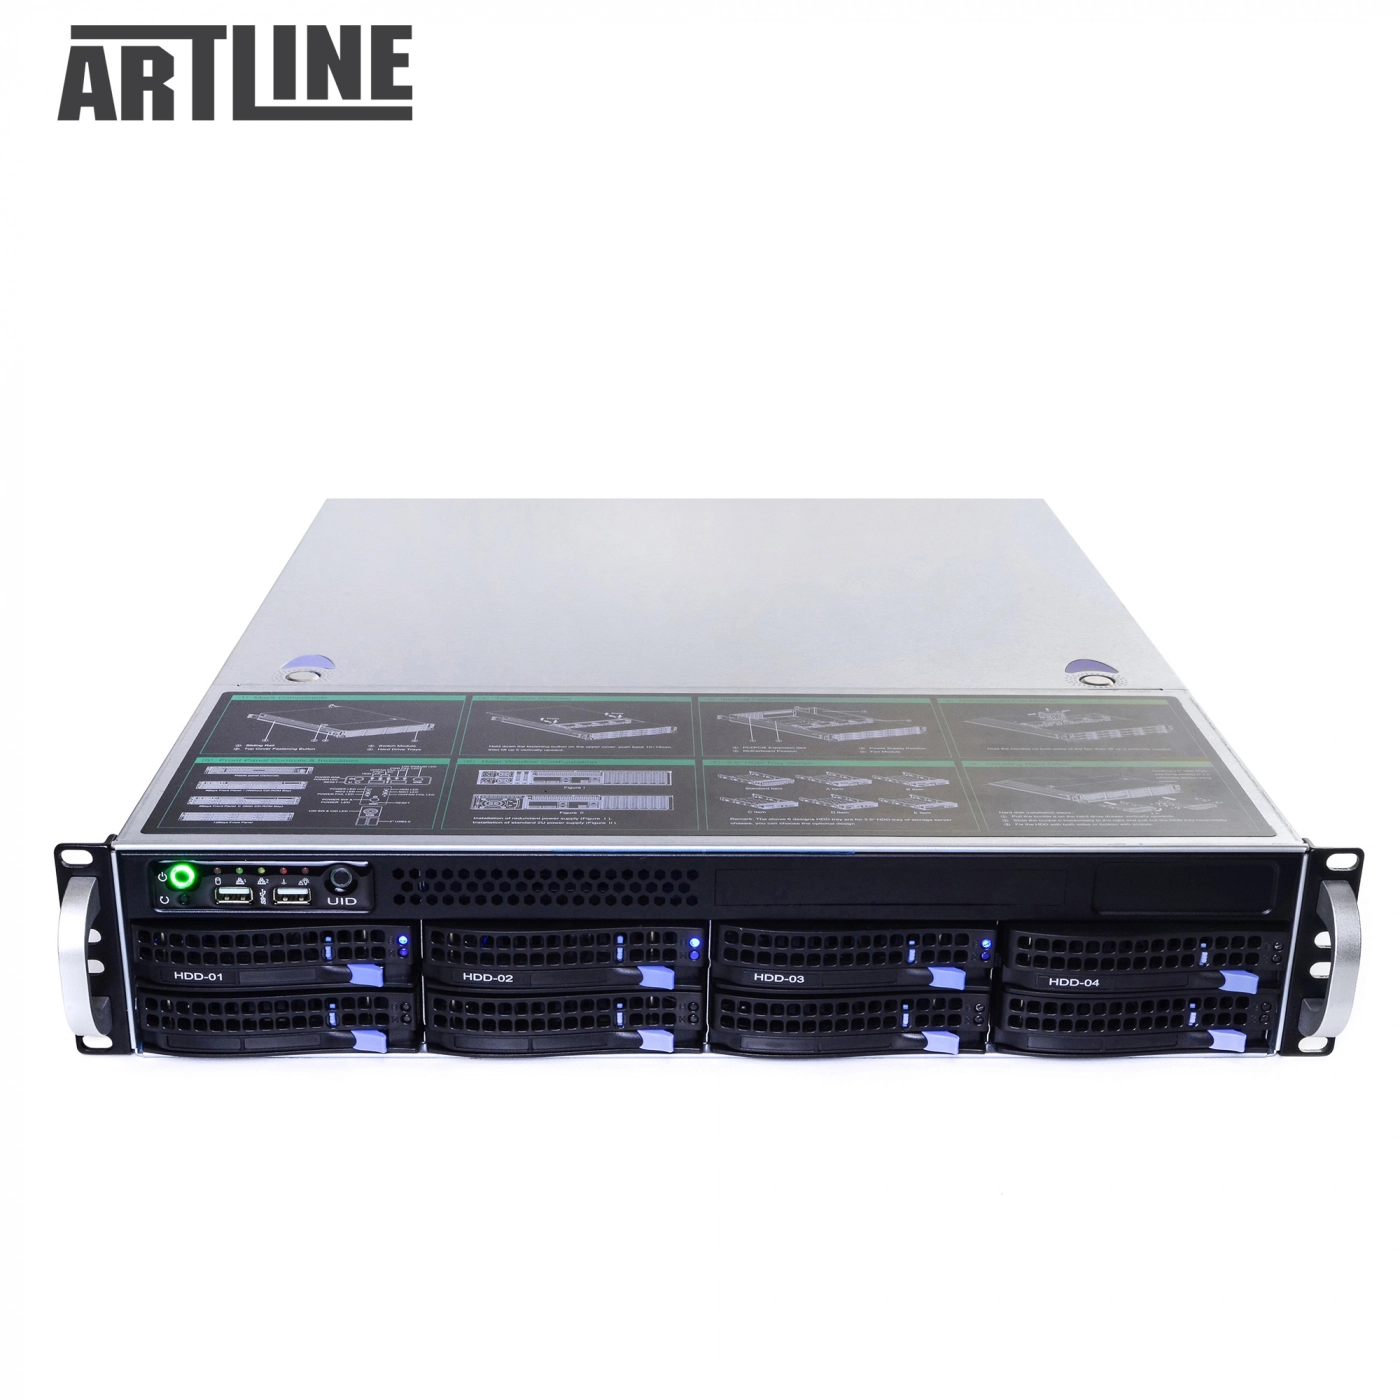 Купить Сервер ARTLINE Business R35v04 - фото 10